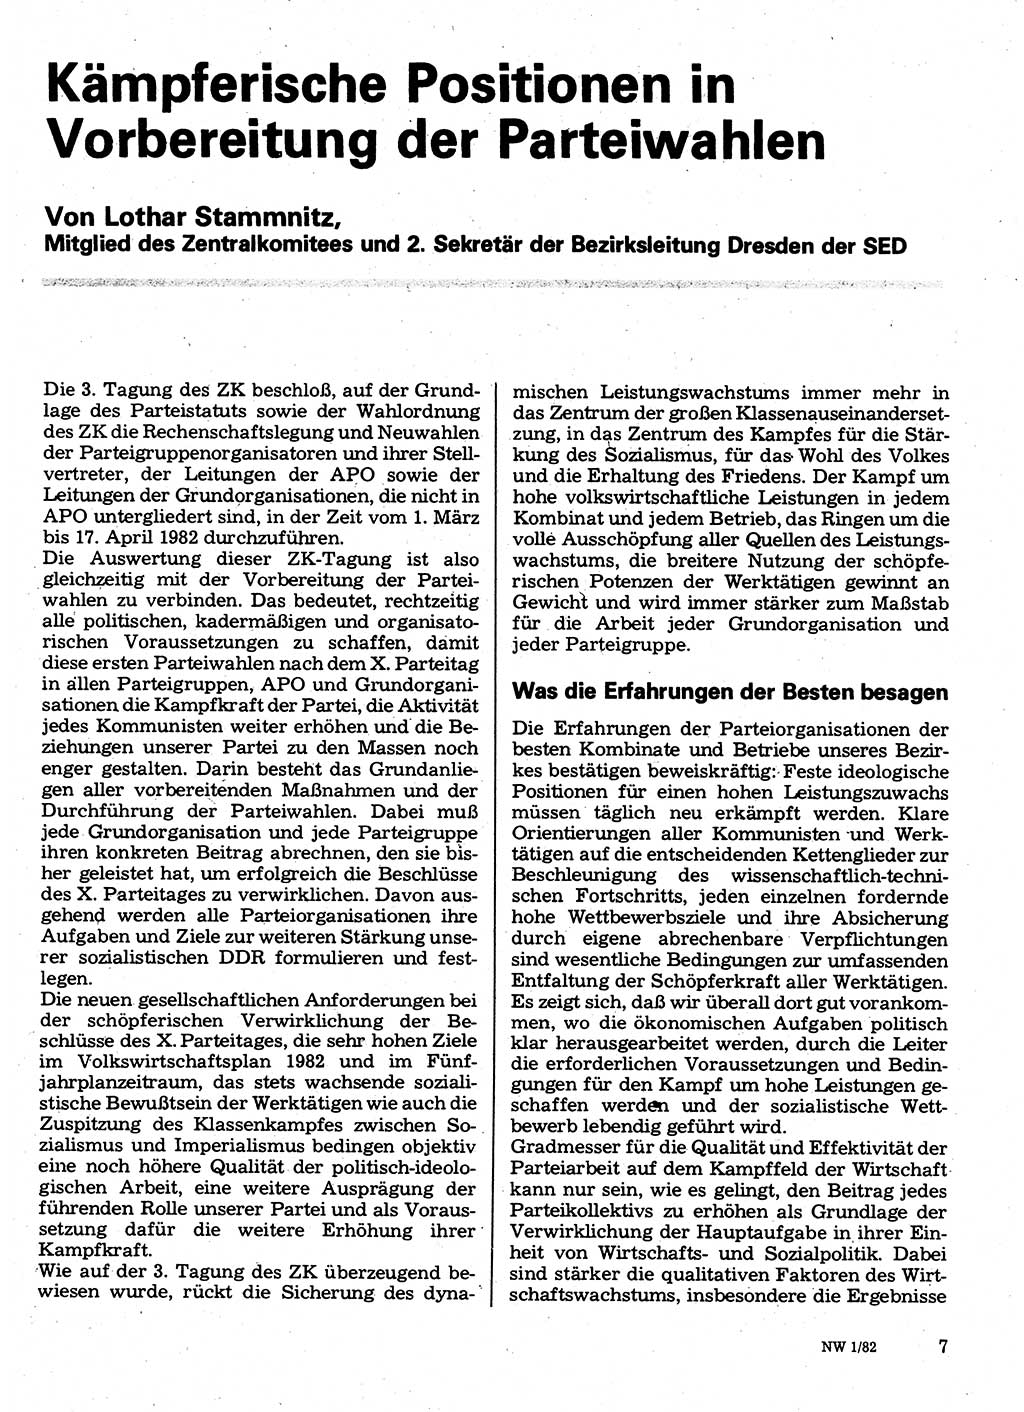 Neuer Weg (NW), Organ des Zentralkomitees (ZK) der SED (Sozialistische Einheitspartei Deutschlands) für Fragen des Parteilebens, 37. Jahrgang [Deutsche Demokratische Republik (DDR)] 1982, Seite 7 (NW ZK SED DDR 1982, S. 7)